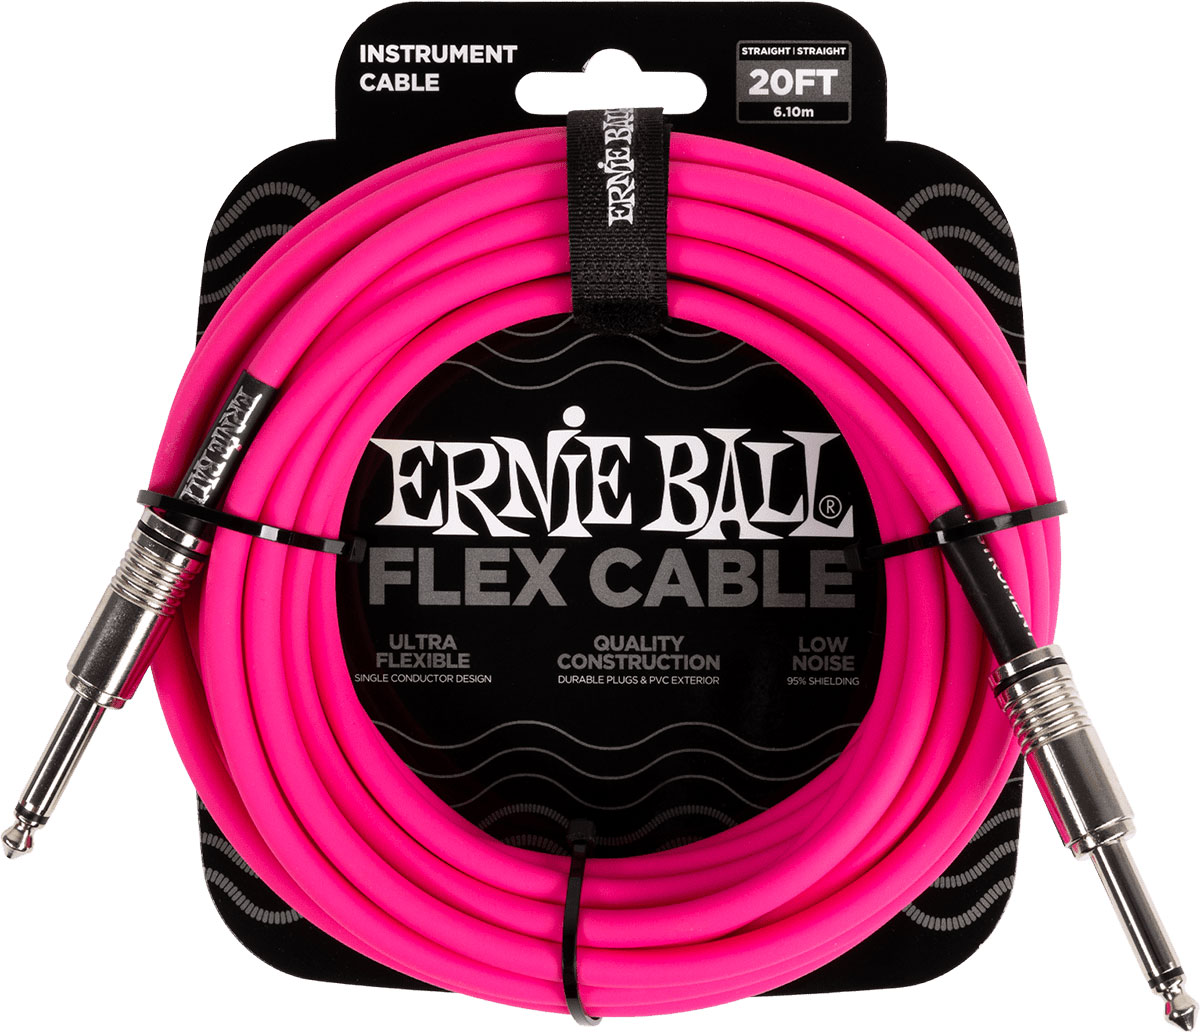 ERNIE BALL INSTRUMENT CABLES FLEX JACK/JACK 6M PINK